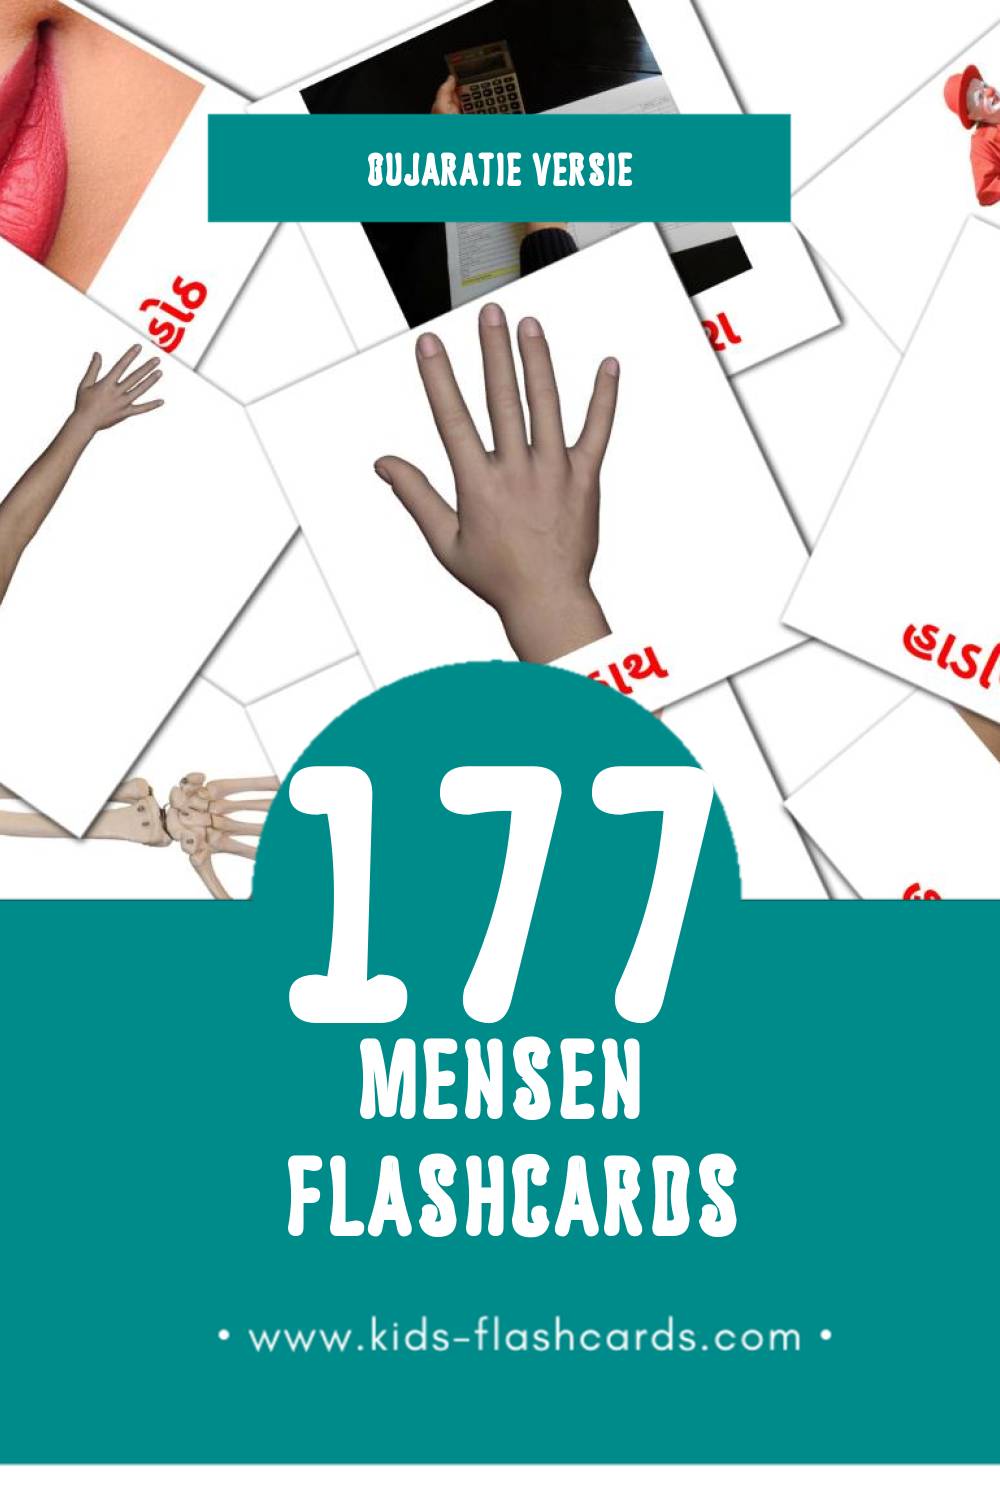 Visuele લોકો Flashcards voor Kleuters (177 kaarten in het Gujarati)